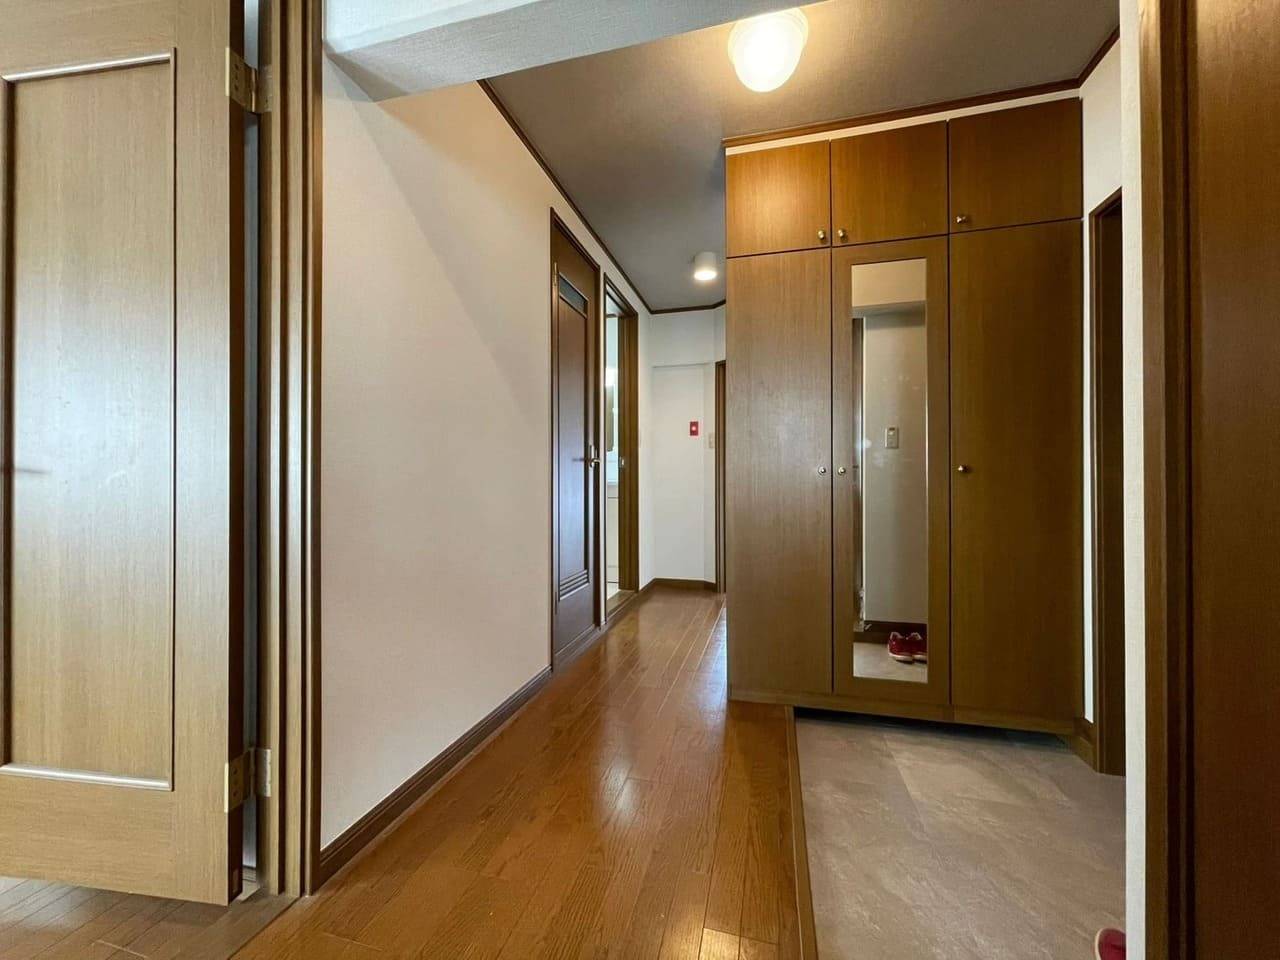 ユーユー不動産が神戸市北区で無料査定と買い取りをしたマンションの画像